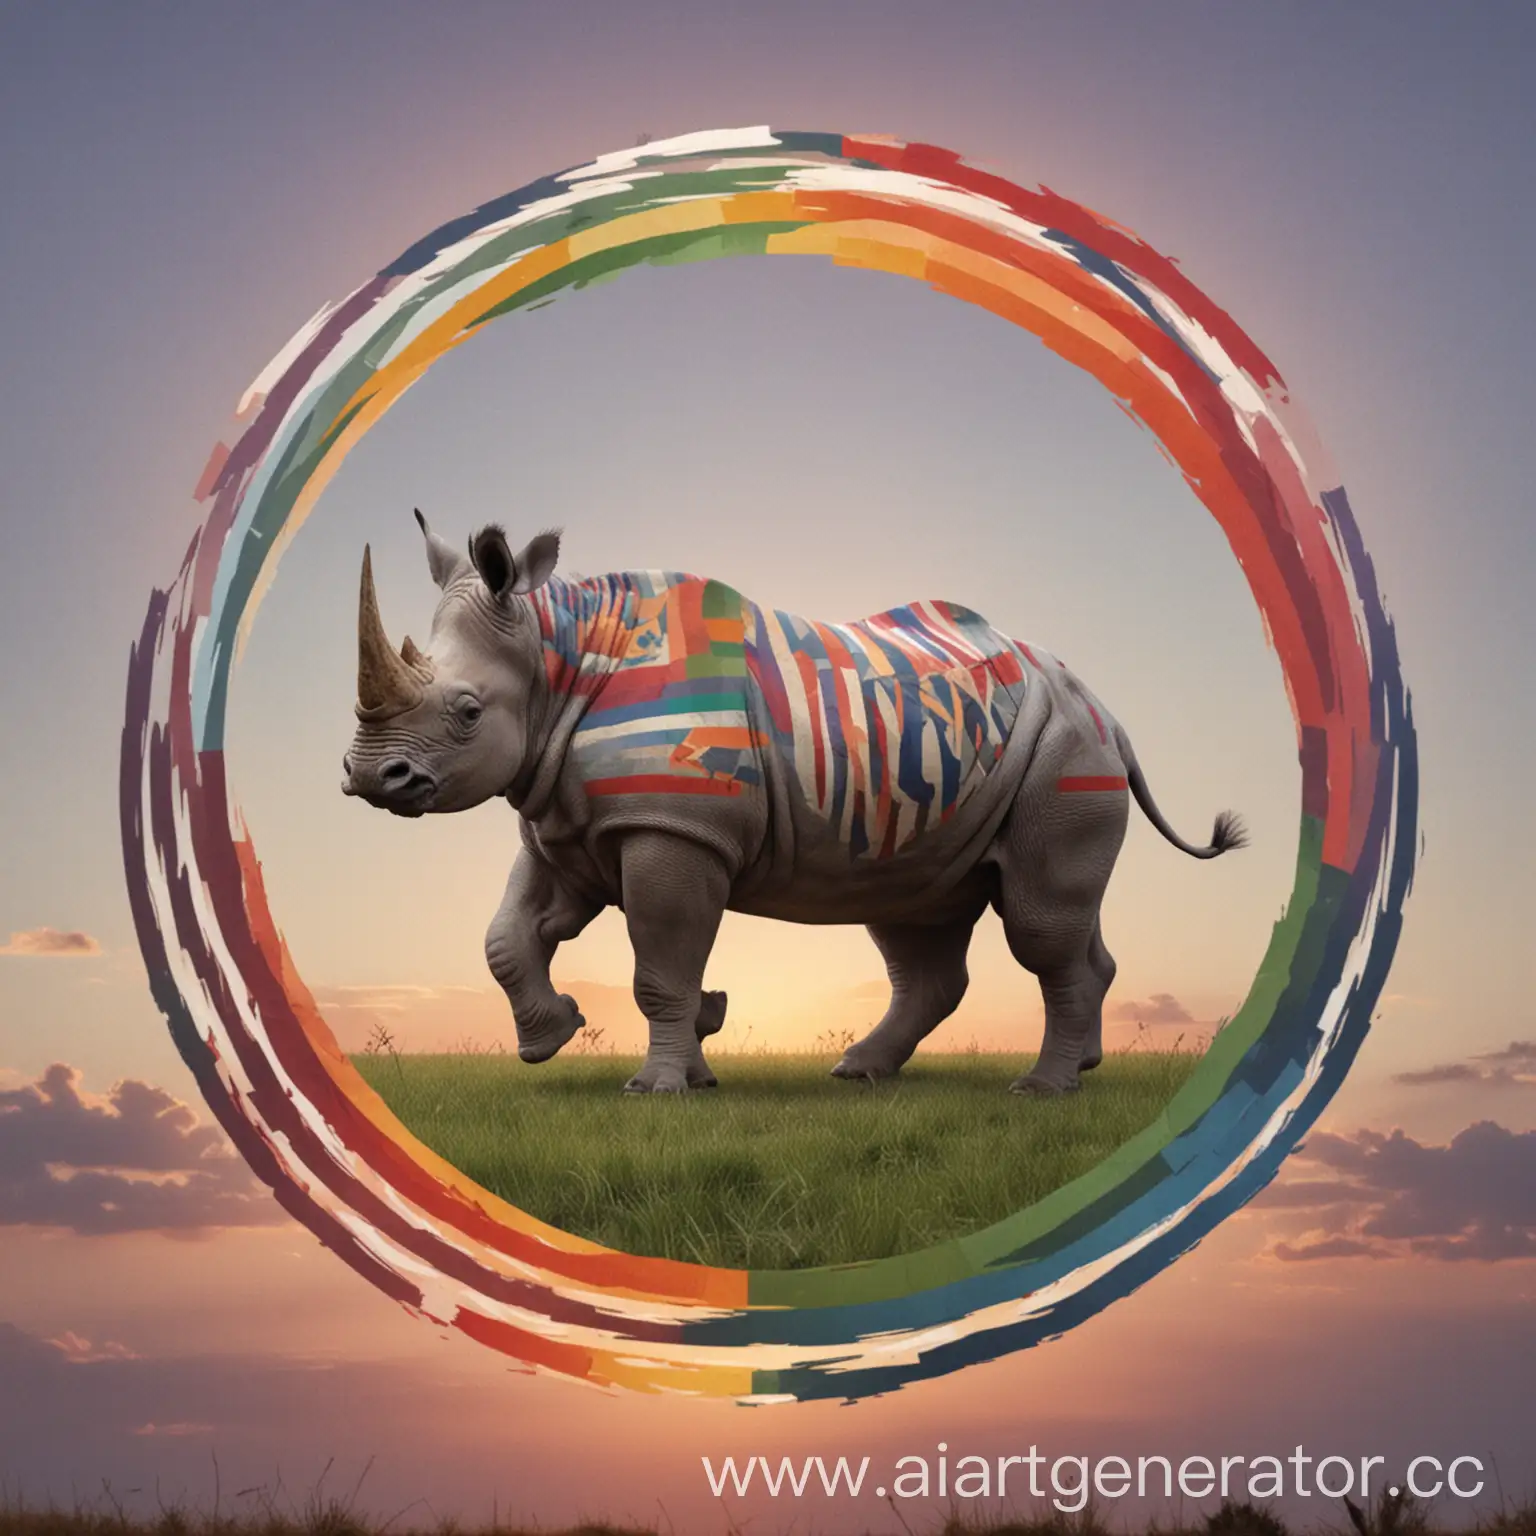  Флаг состоит из разноцветных полос, которые меняют цвет в зависимости от времени суток, с изображением танцующего носорога в центре.